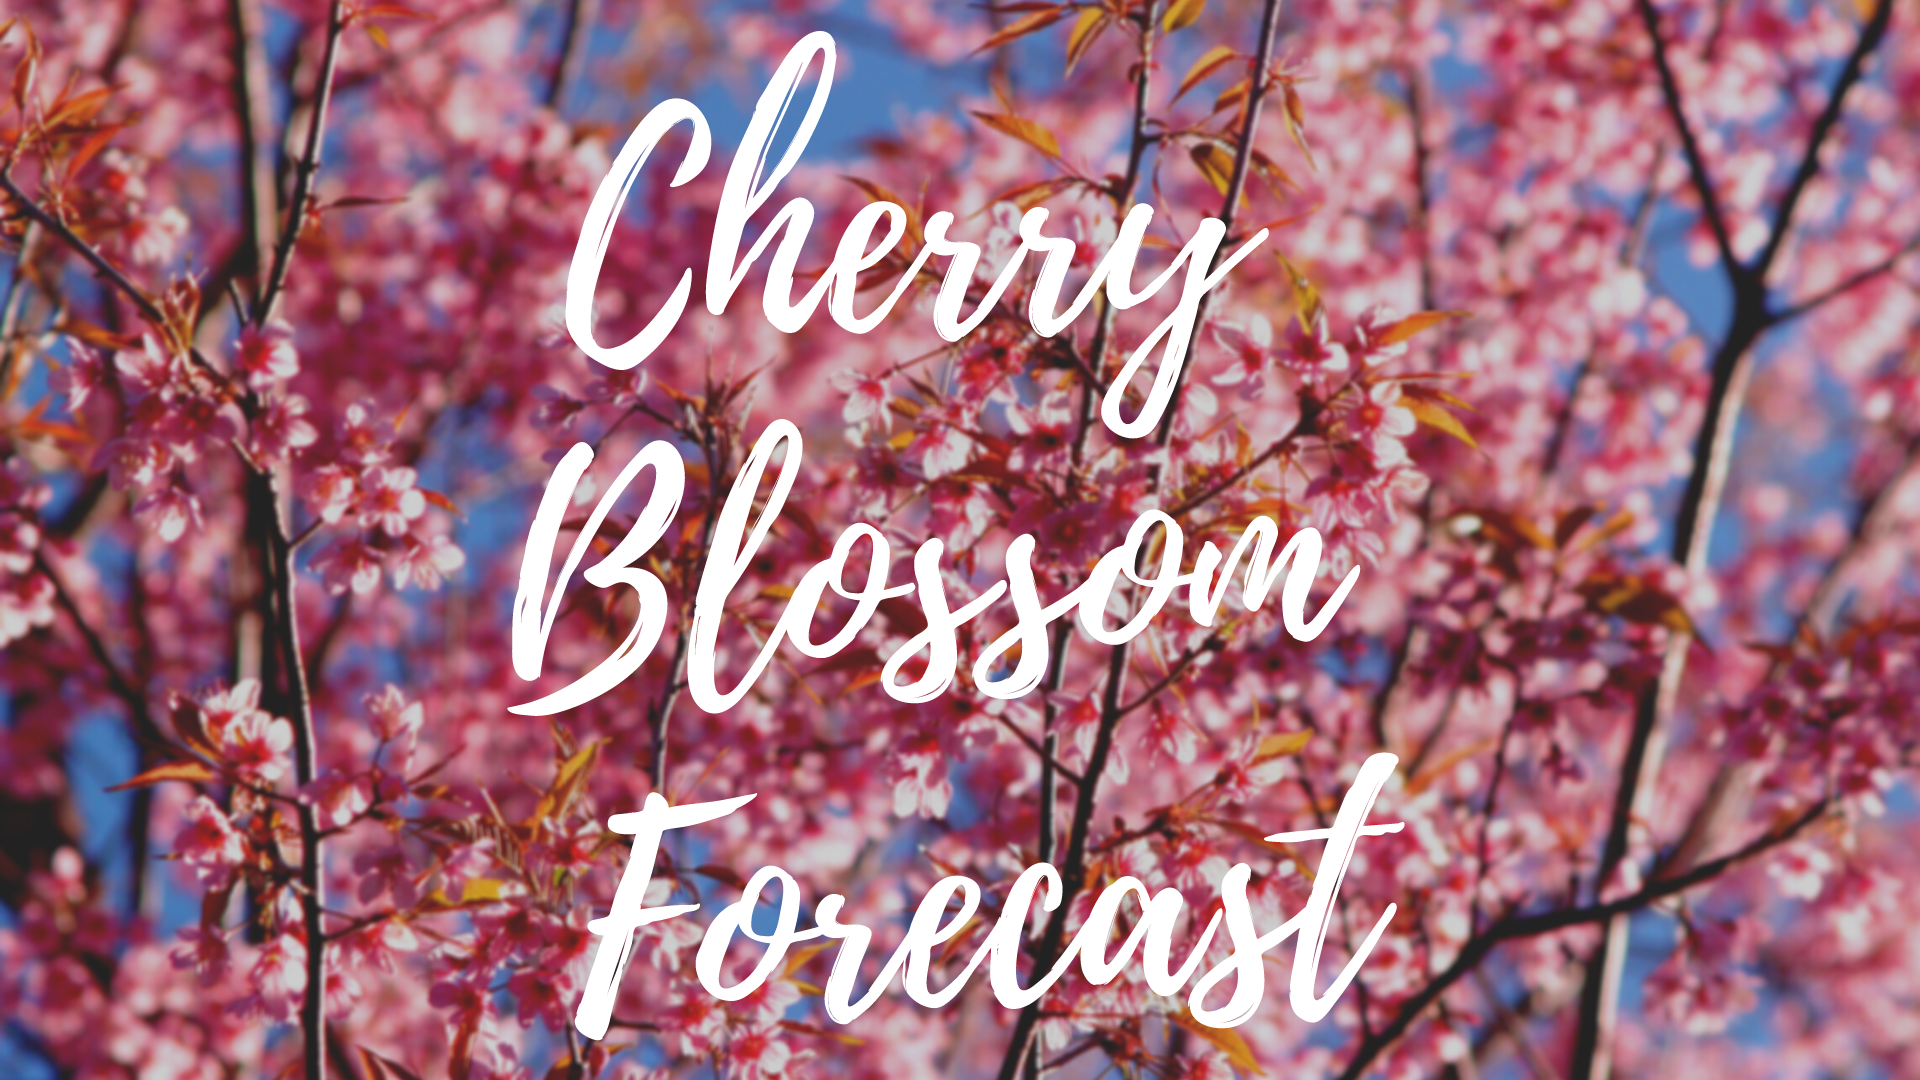 Cupertino cherry blossom festival 2023